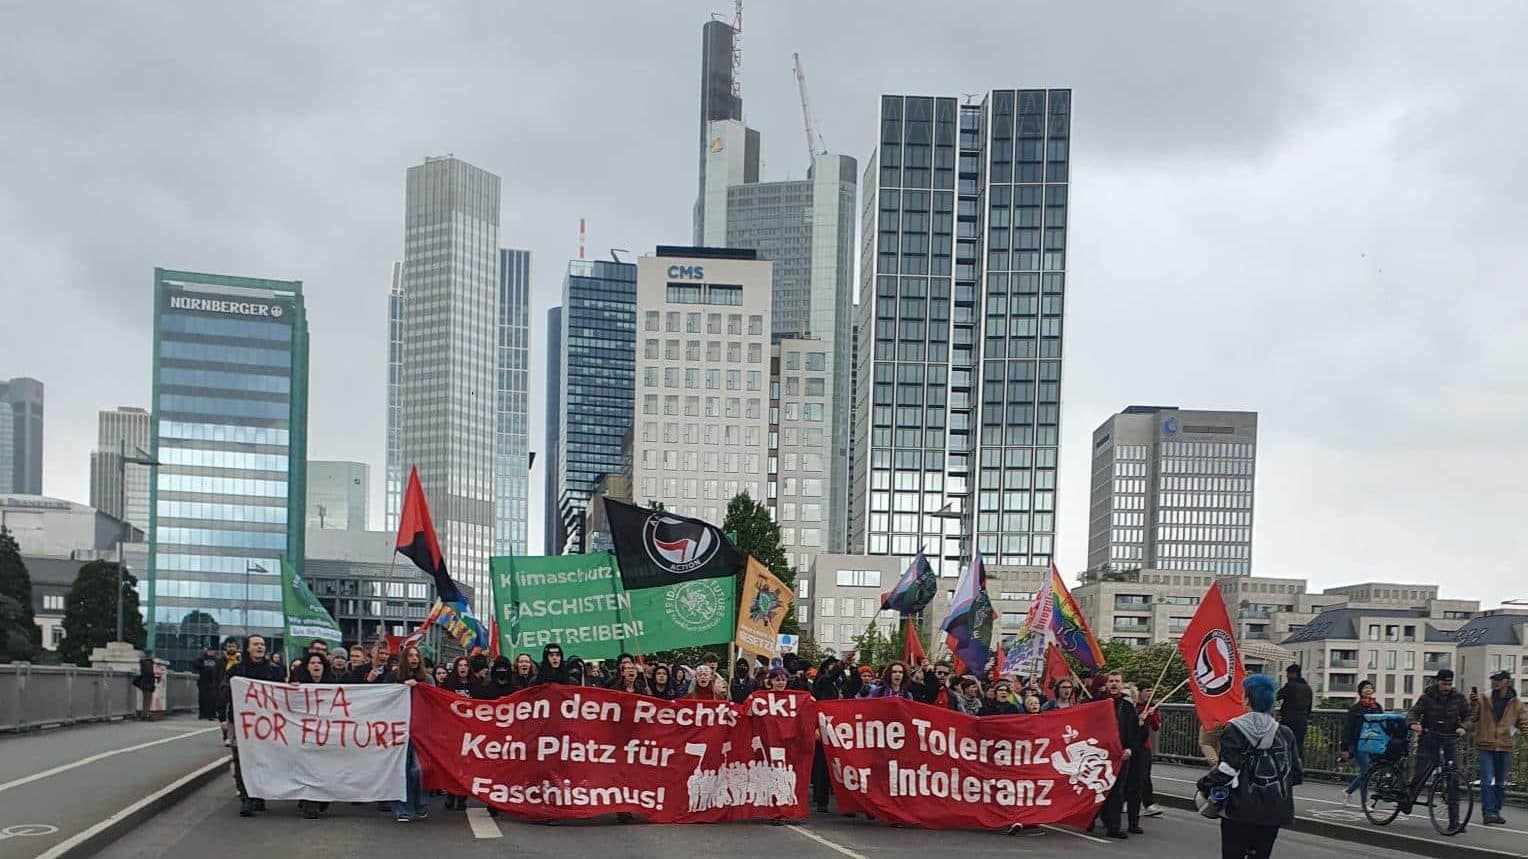 Hintergrund: Skyline von Frankfurt. Vordergrund: Demonstrierende mit Banner, auf dem steht: "Gegen den Rechtsruck! Kein Platz für Faschismus! Keine Toleranz der Intoleranz!"